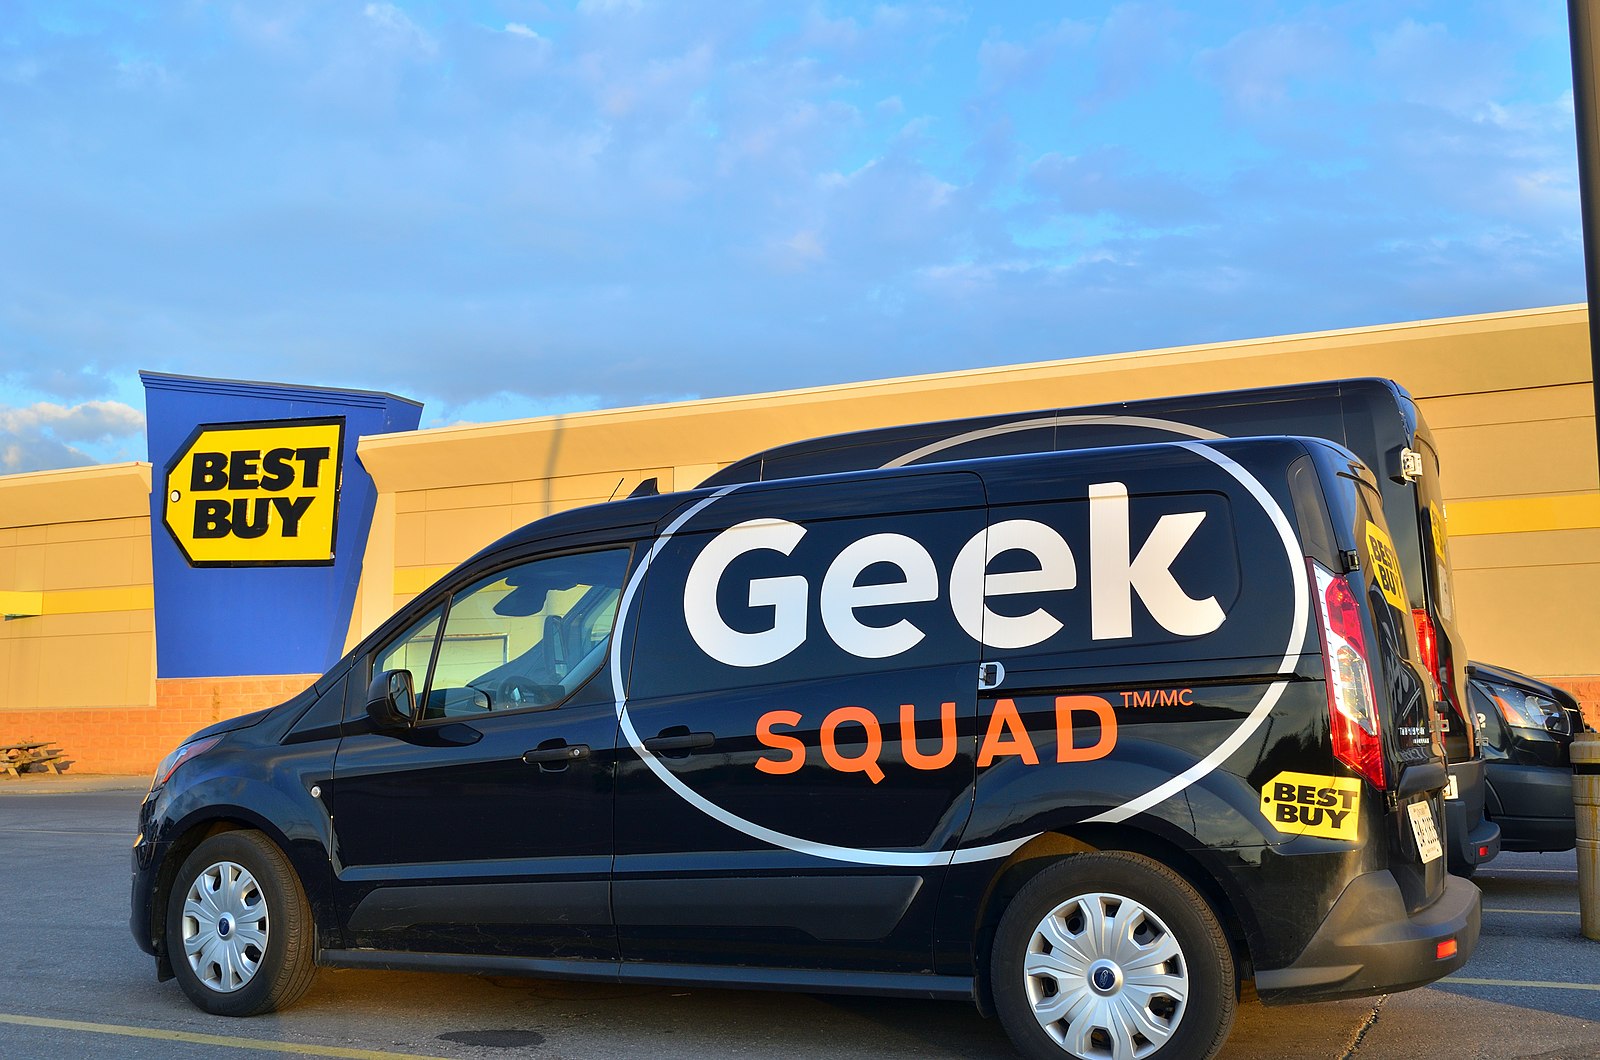 Best Buy Geek Squad